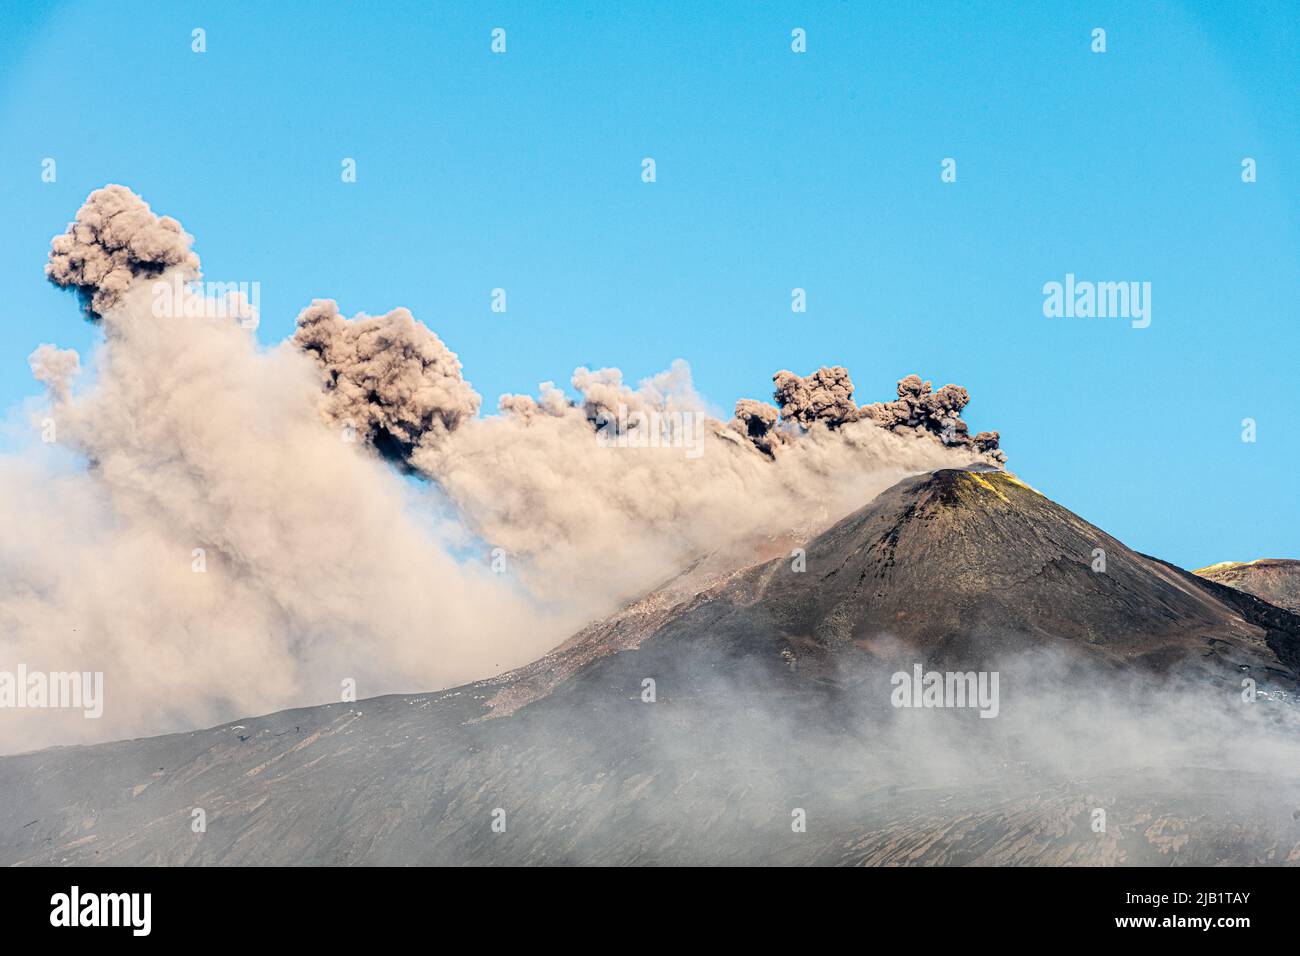 Enormes nubes de ceniza volcánica que brotan desde el cráter sudeste del Monte Etna, Sicilia, Italia. Una nueva fisura se abrió en este cráter a principios de mayo de 2022 y ha estado continuamente activa desde entonces. El Etna (3357m) es uno de los volcanes más activos del mundo y el más alto de Europa Foto de stock